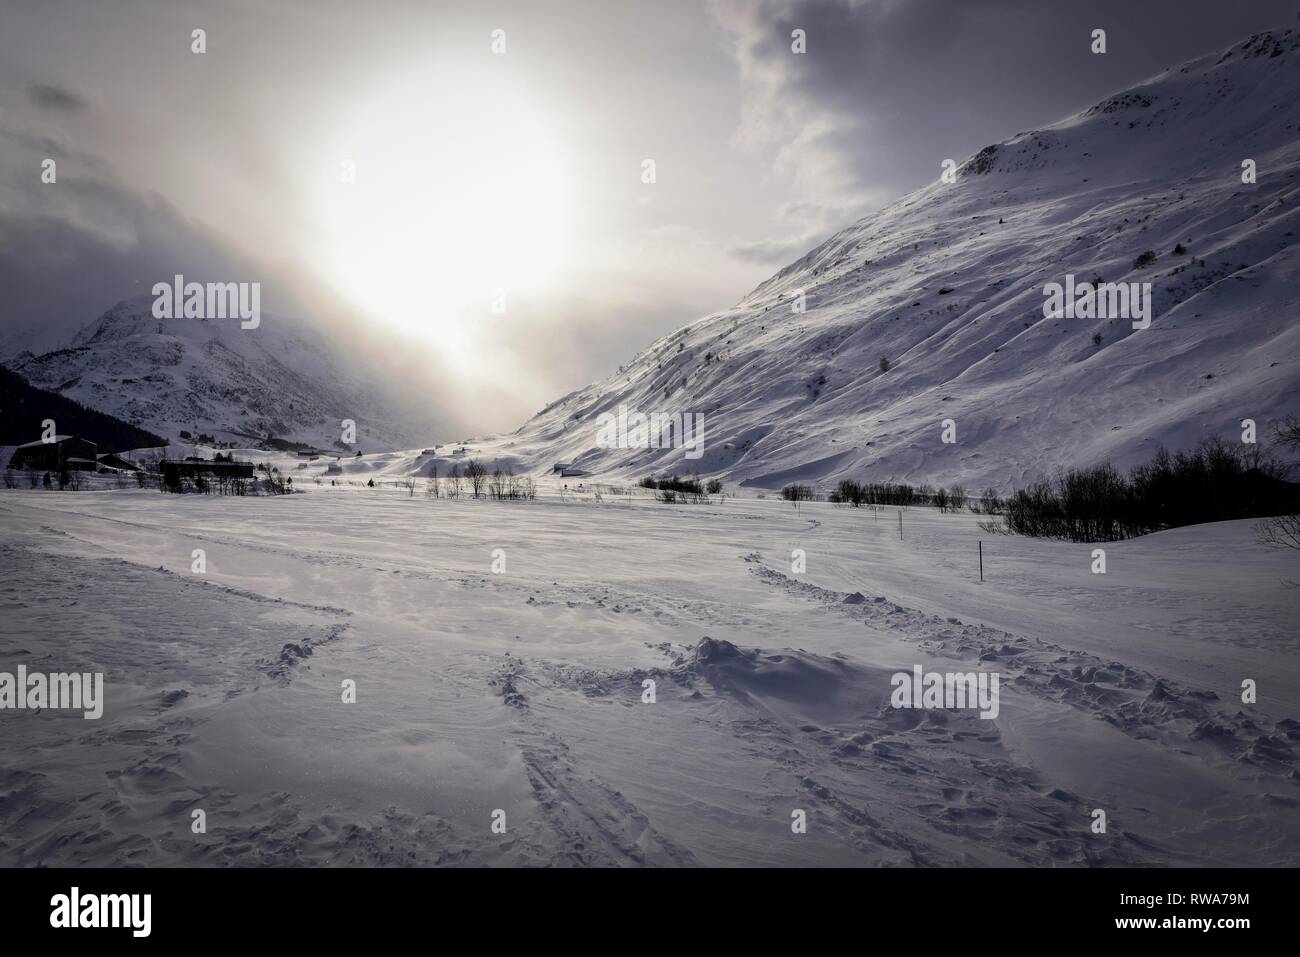 Snowy mountain landscape in winter, Andermatt, Switzerland Stock Photo